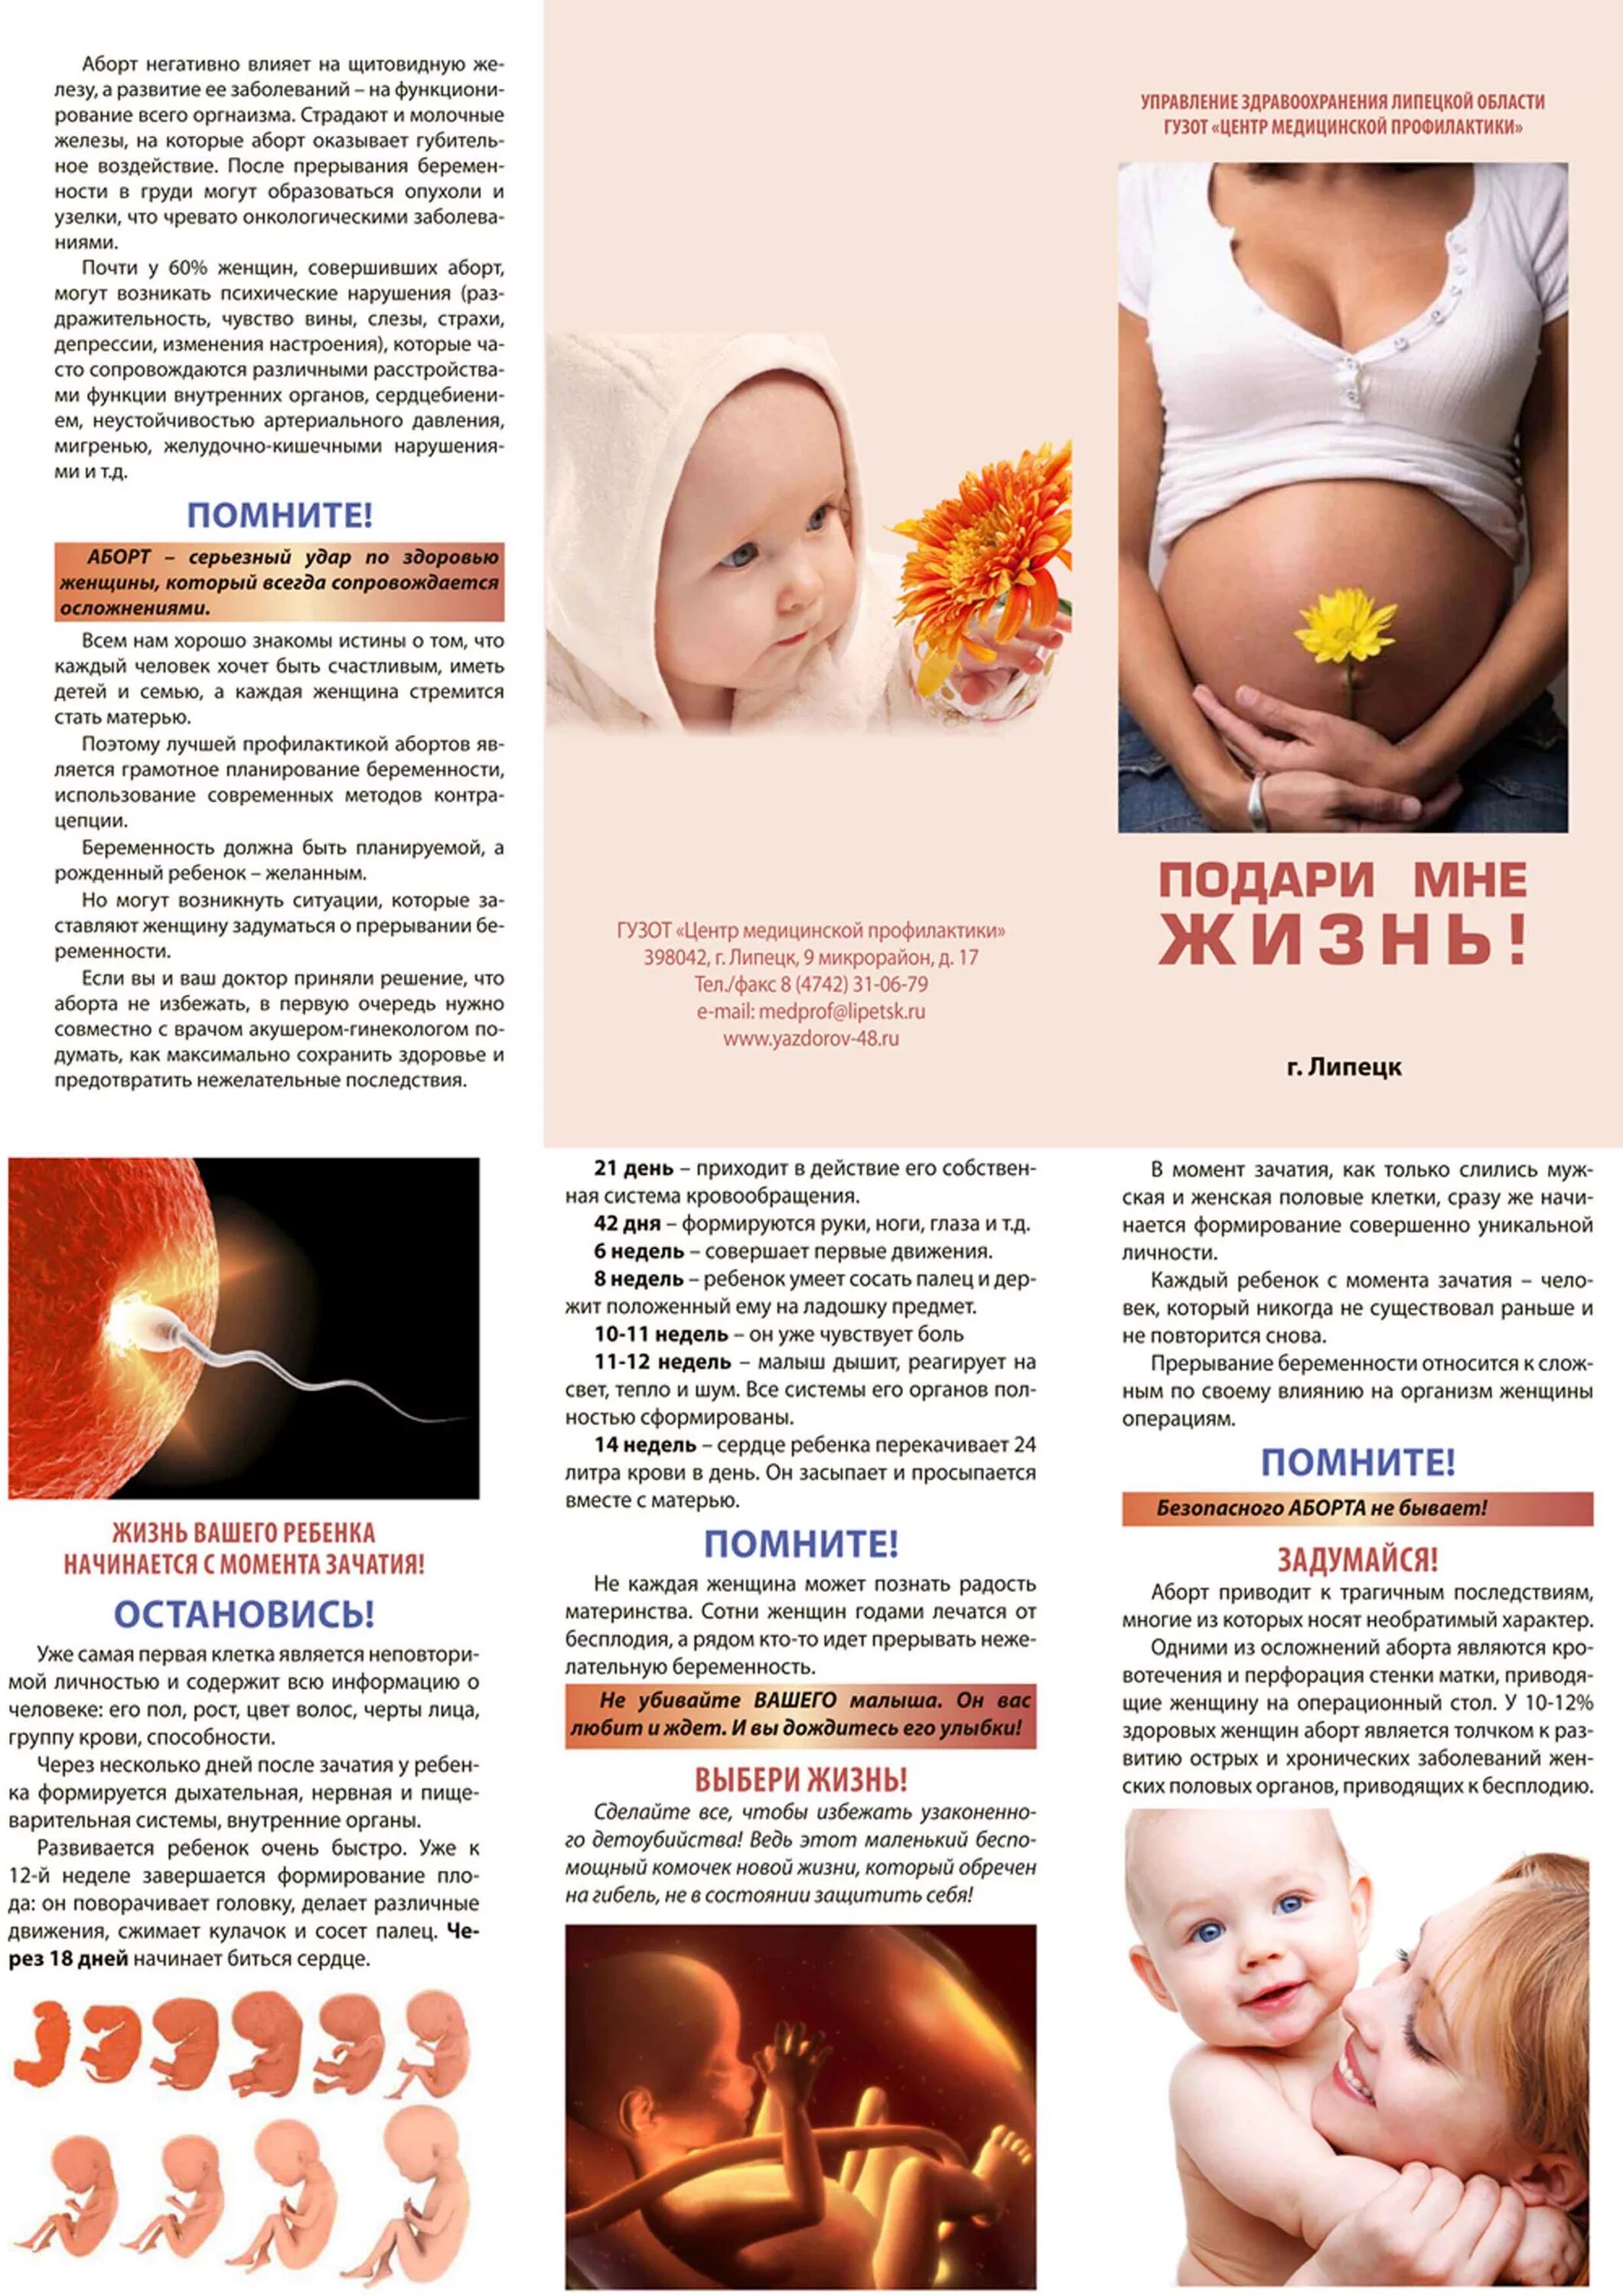 Прерывания беременности статья. Профилактика абортов памятка. Буклет для женской консультации. Профилактика абортов брошюра. Листовки для беременных.